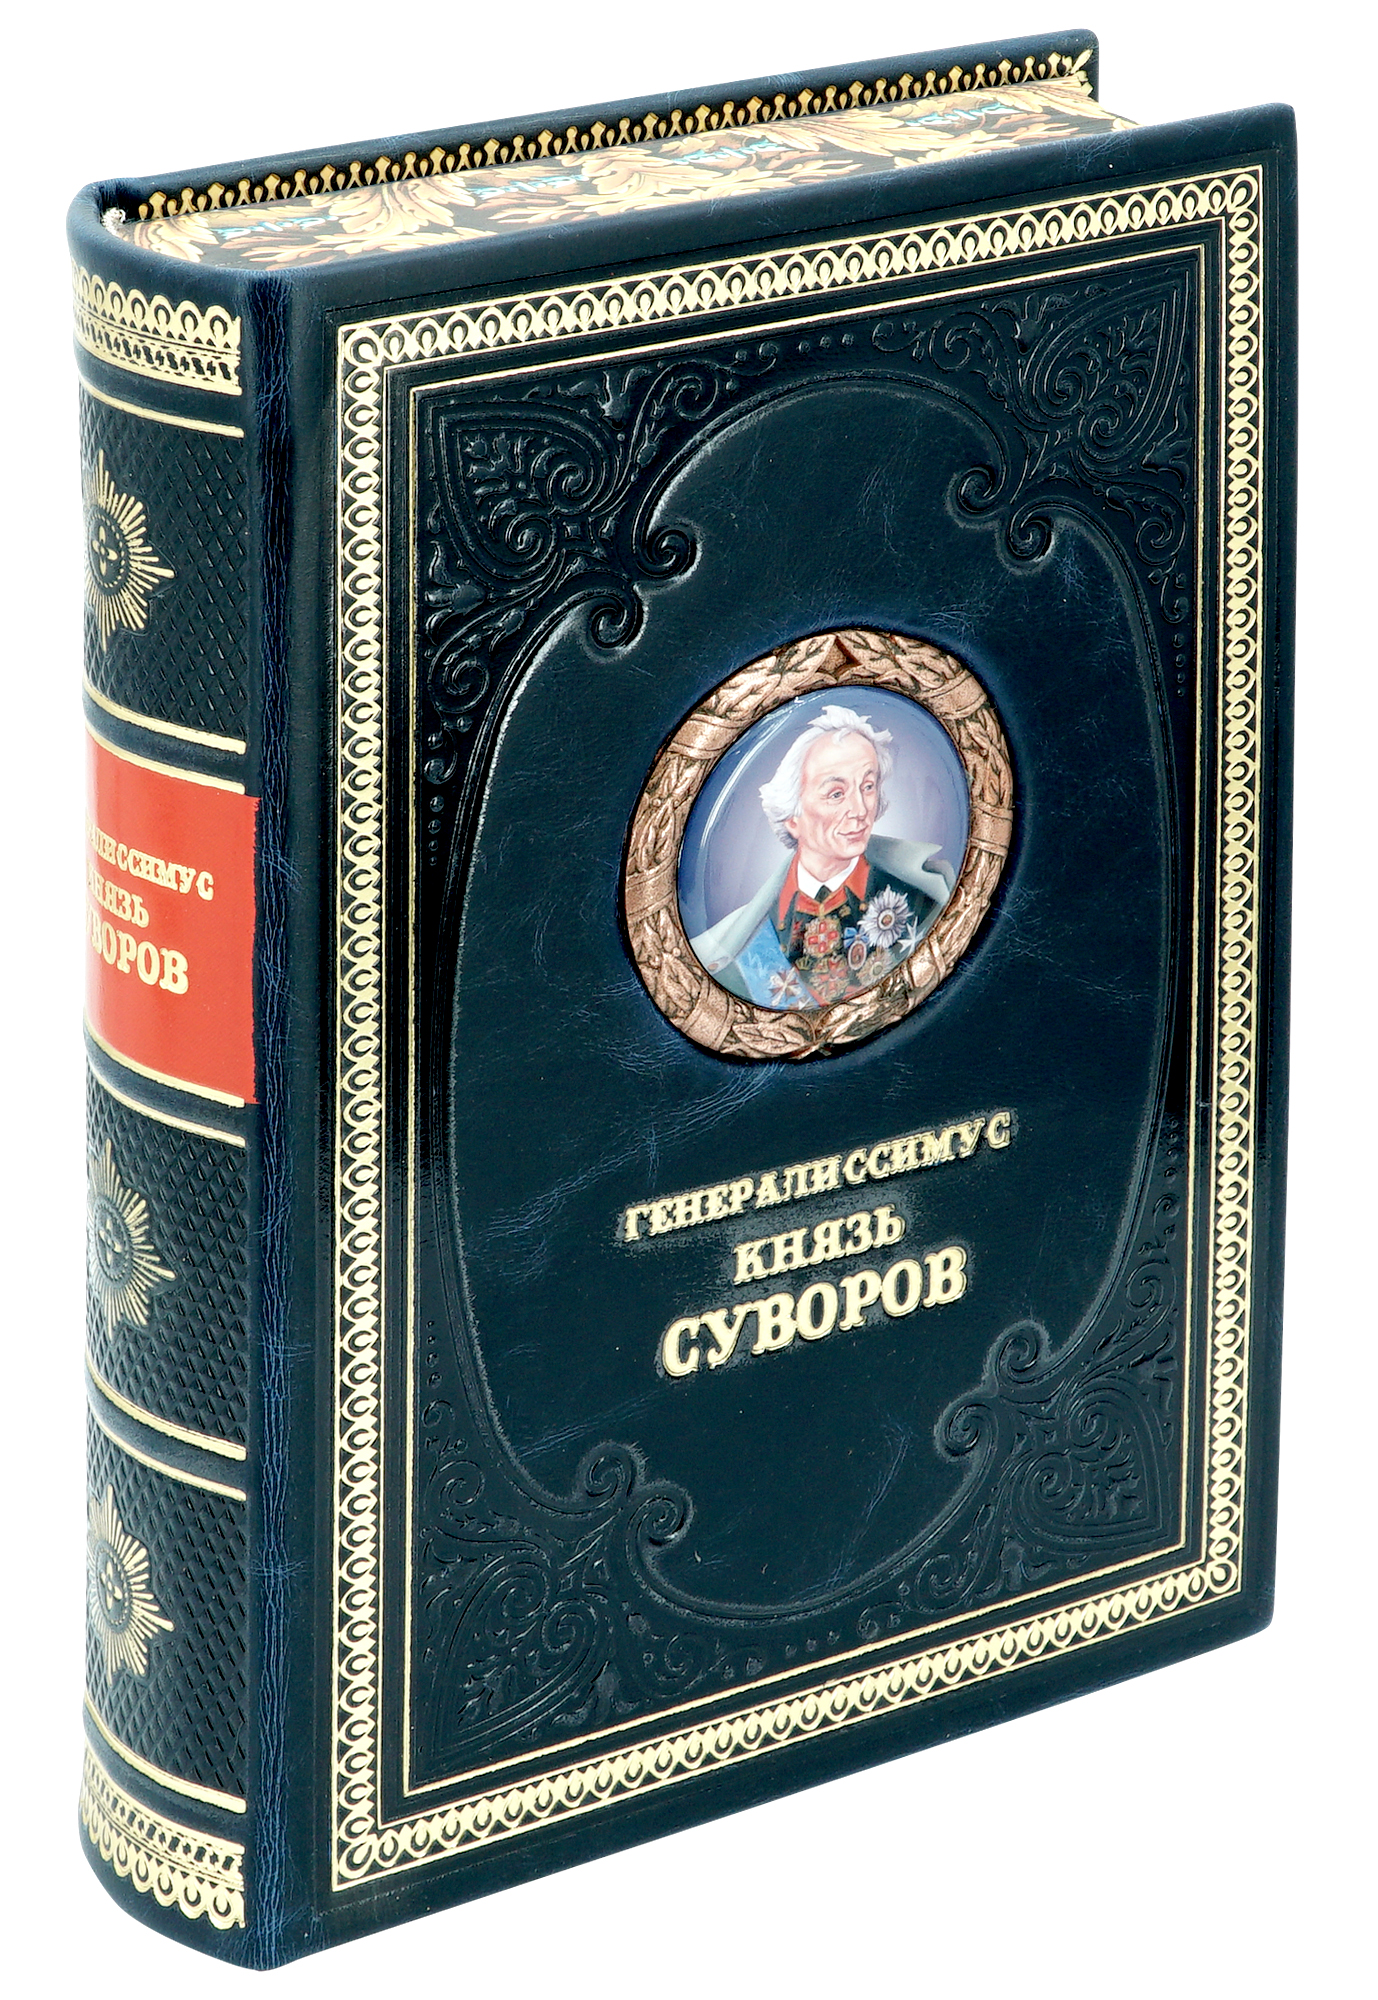 Книга «Генералиссимус князь Суворов»